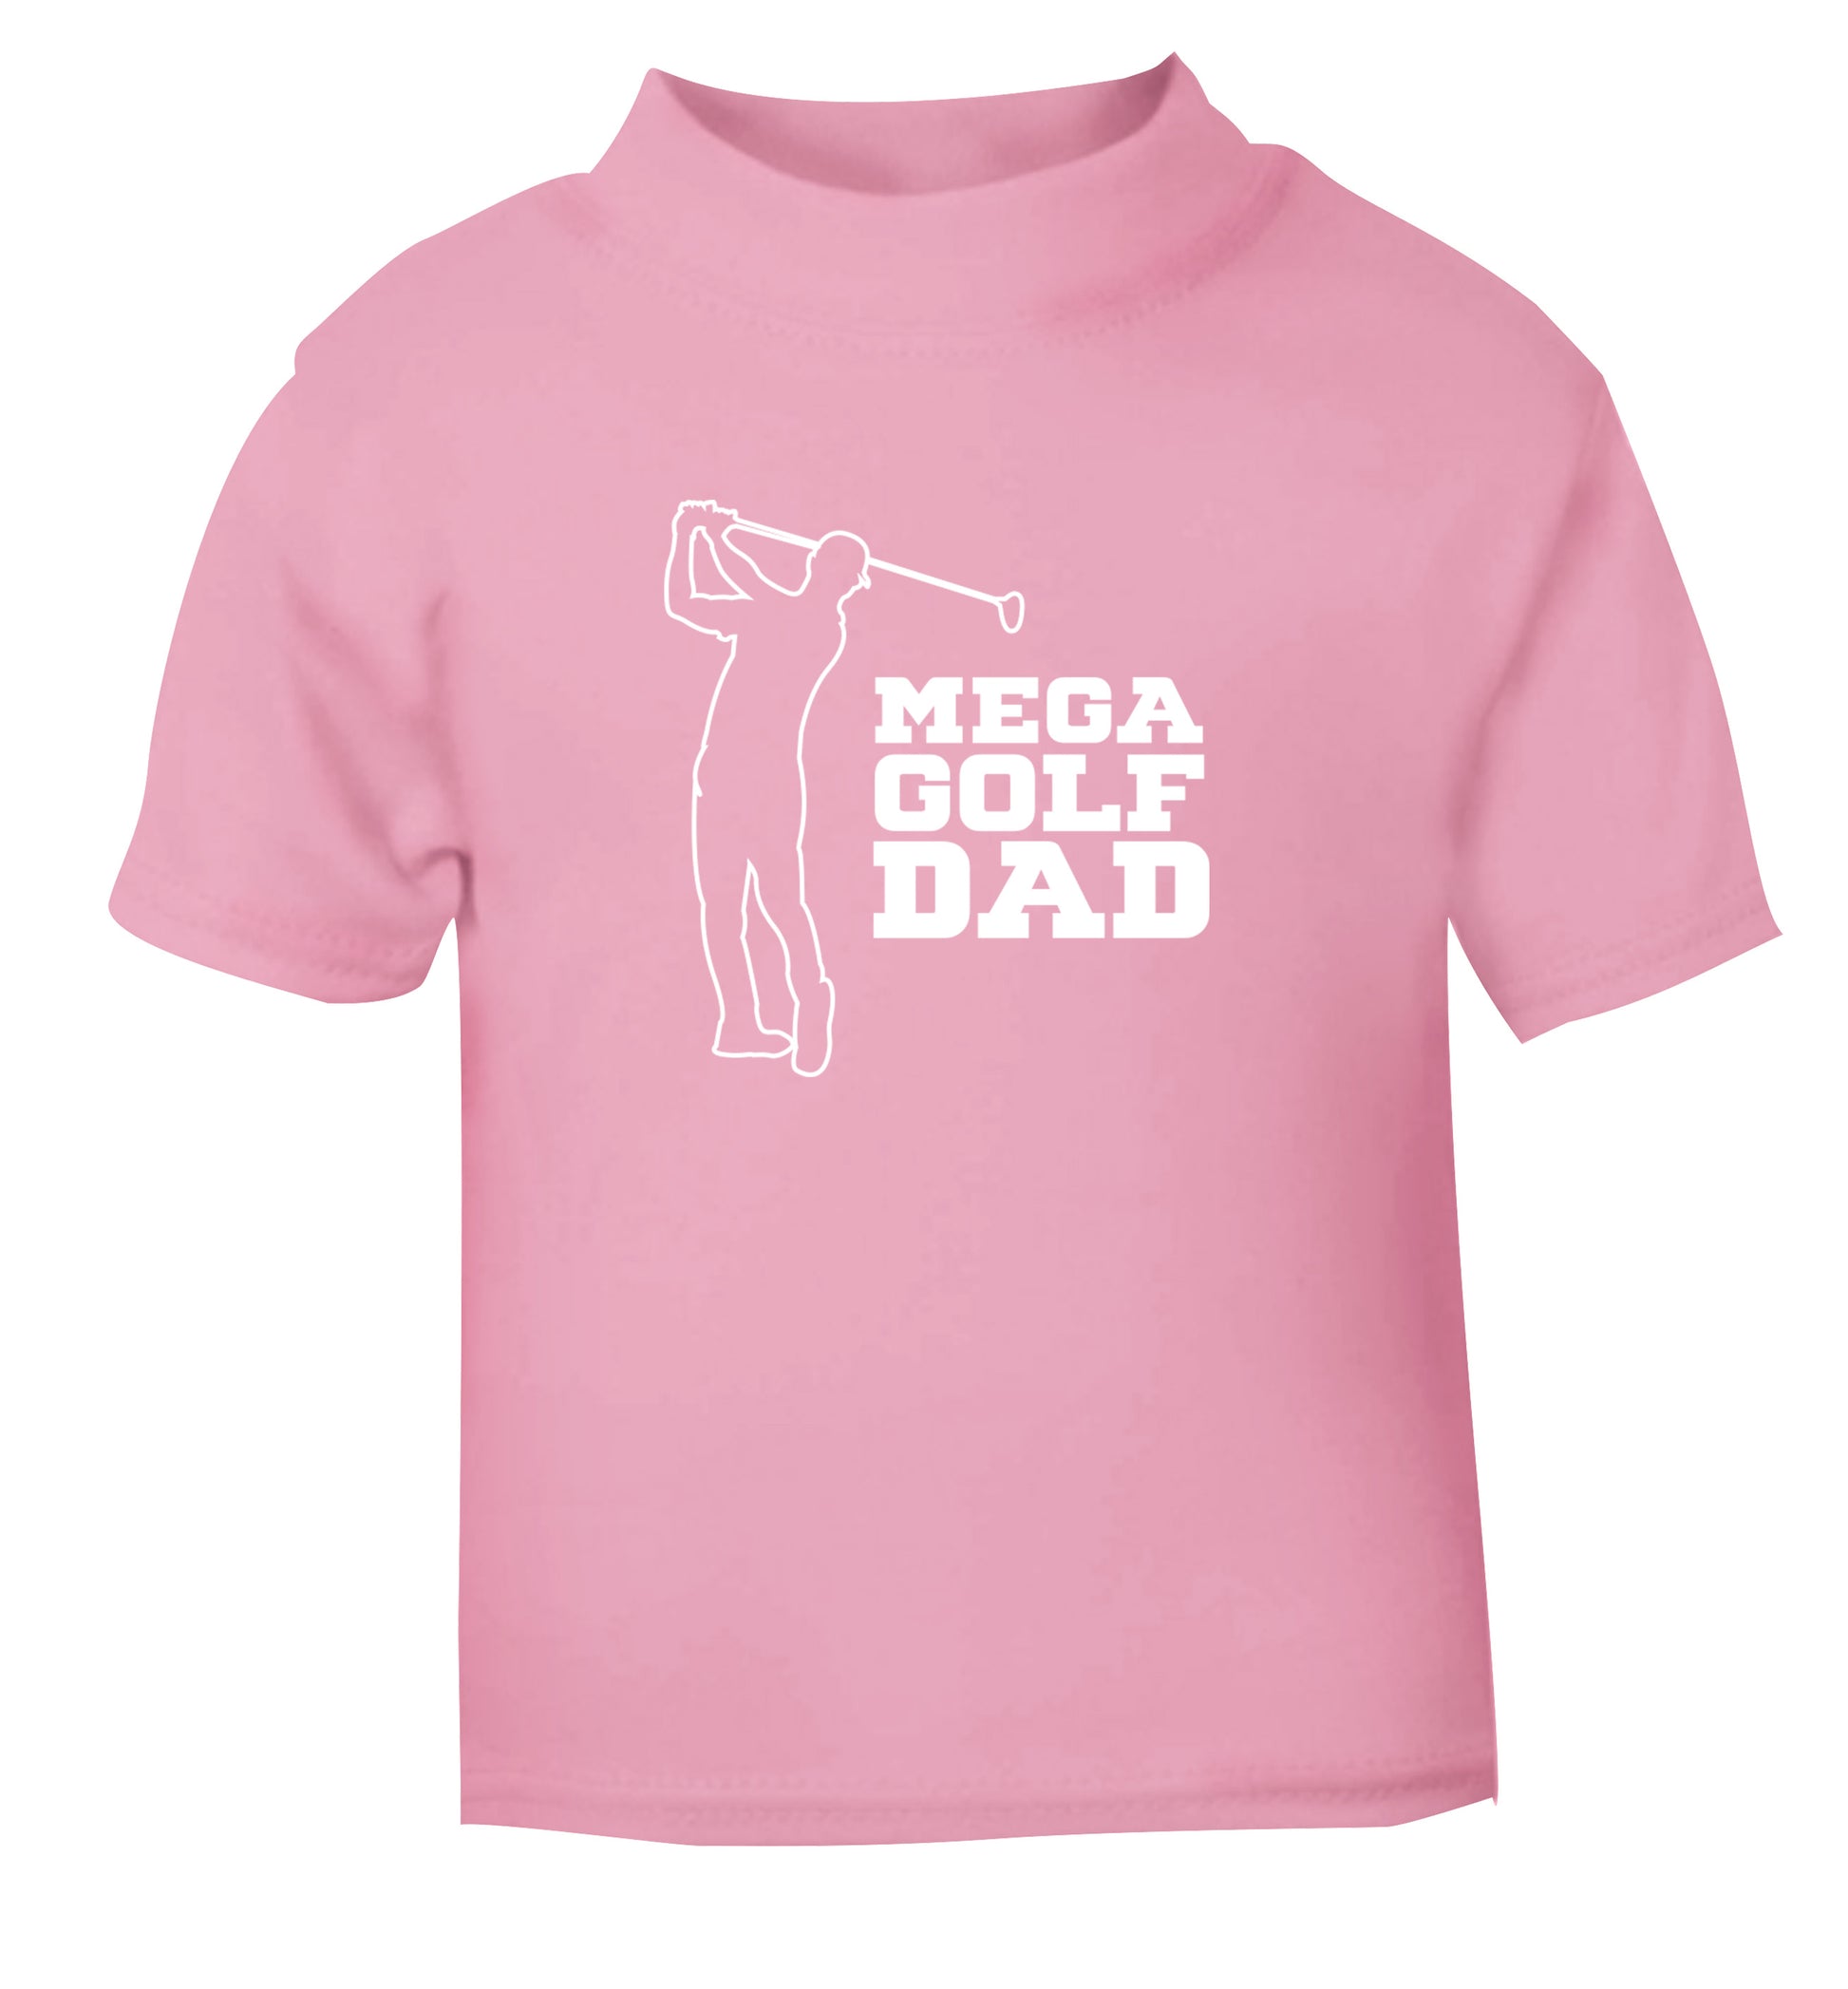 Mega golfing dad light pink Baby Toddler Tshirt 2 Years